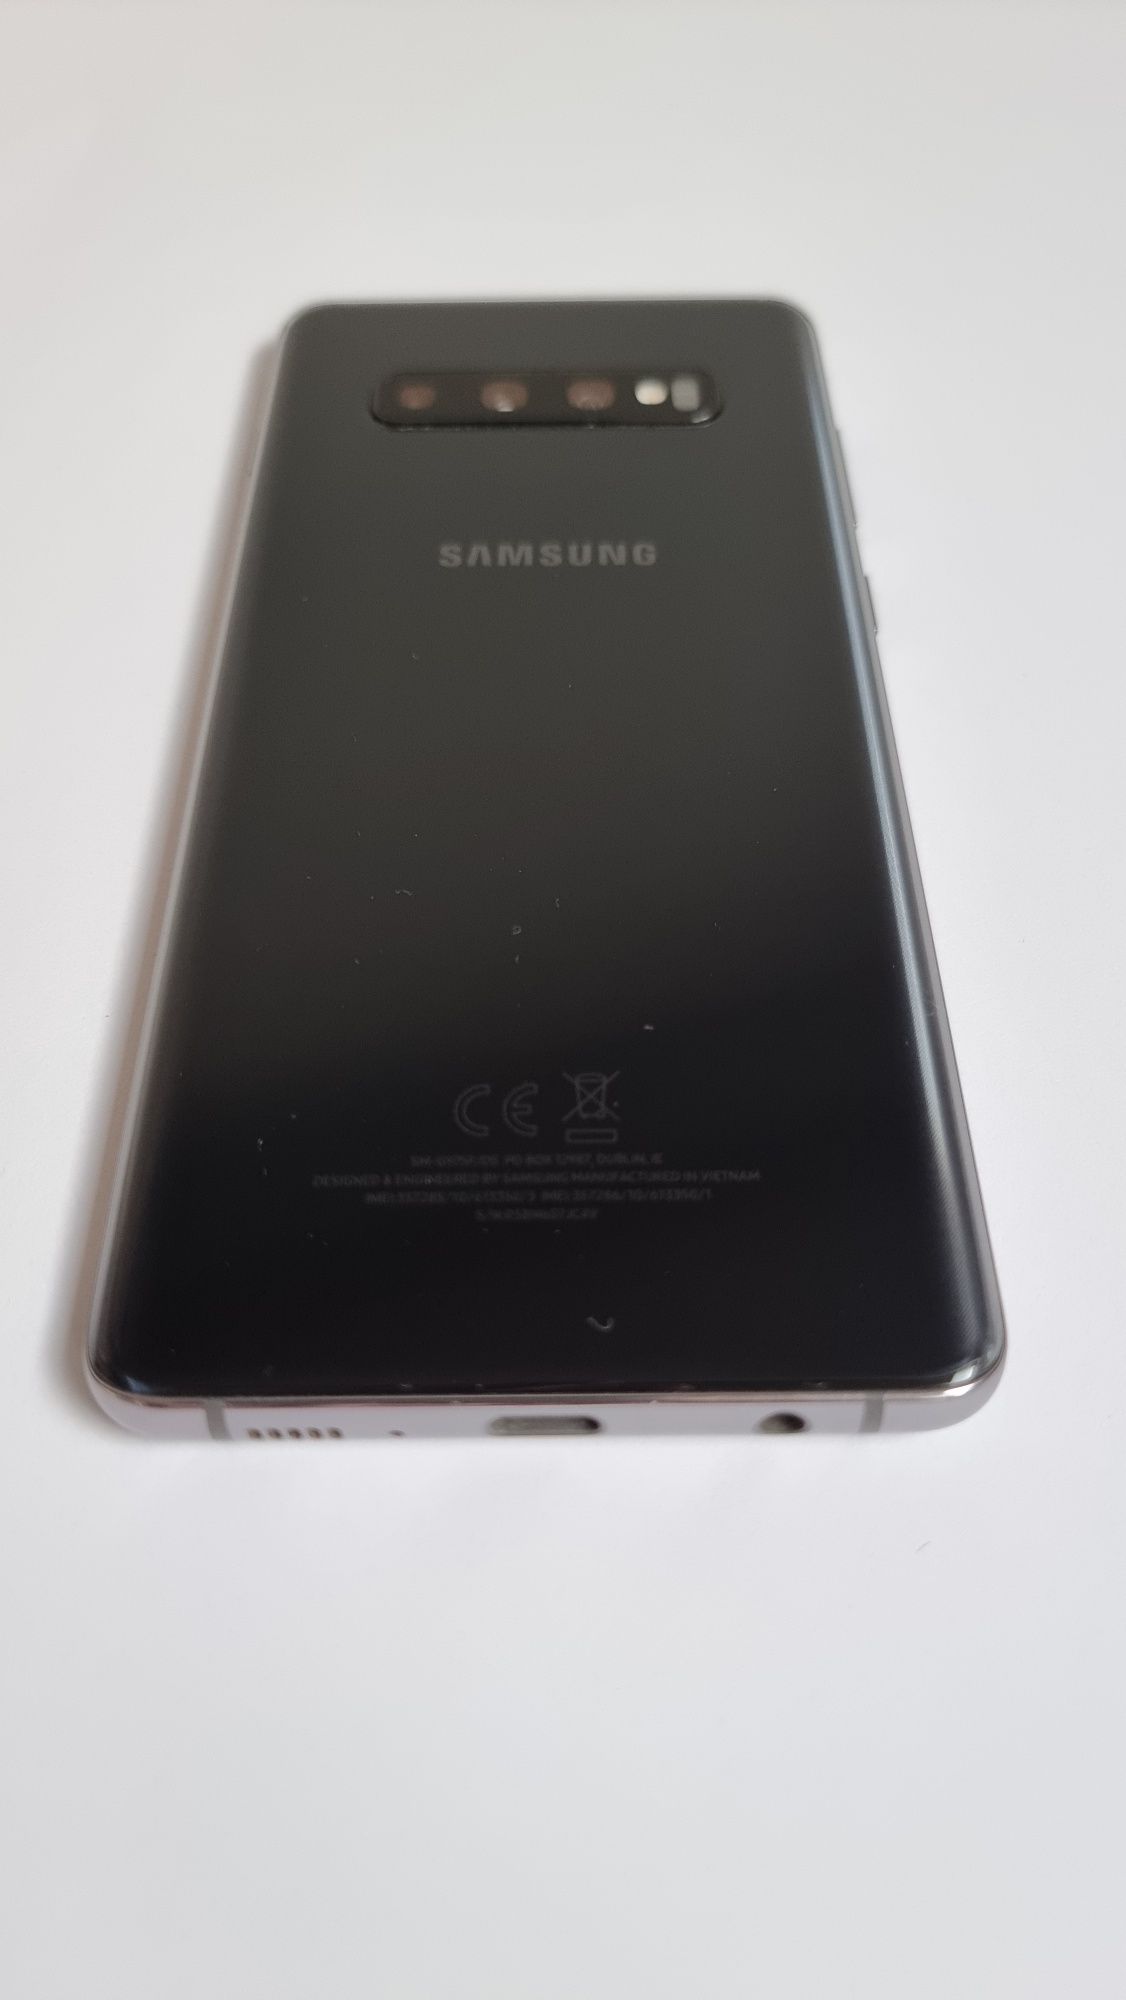 Samsung Galaxy S10+ (uszkodzony)